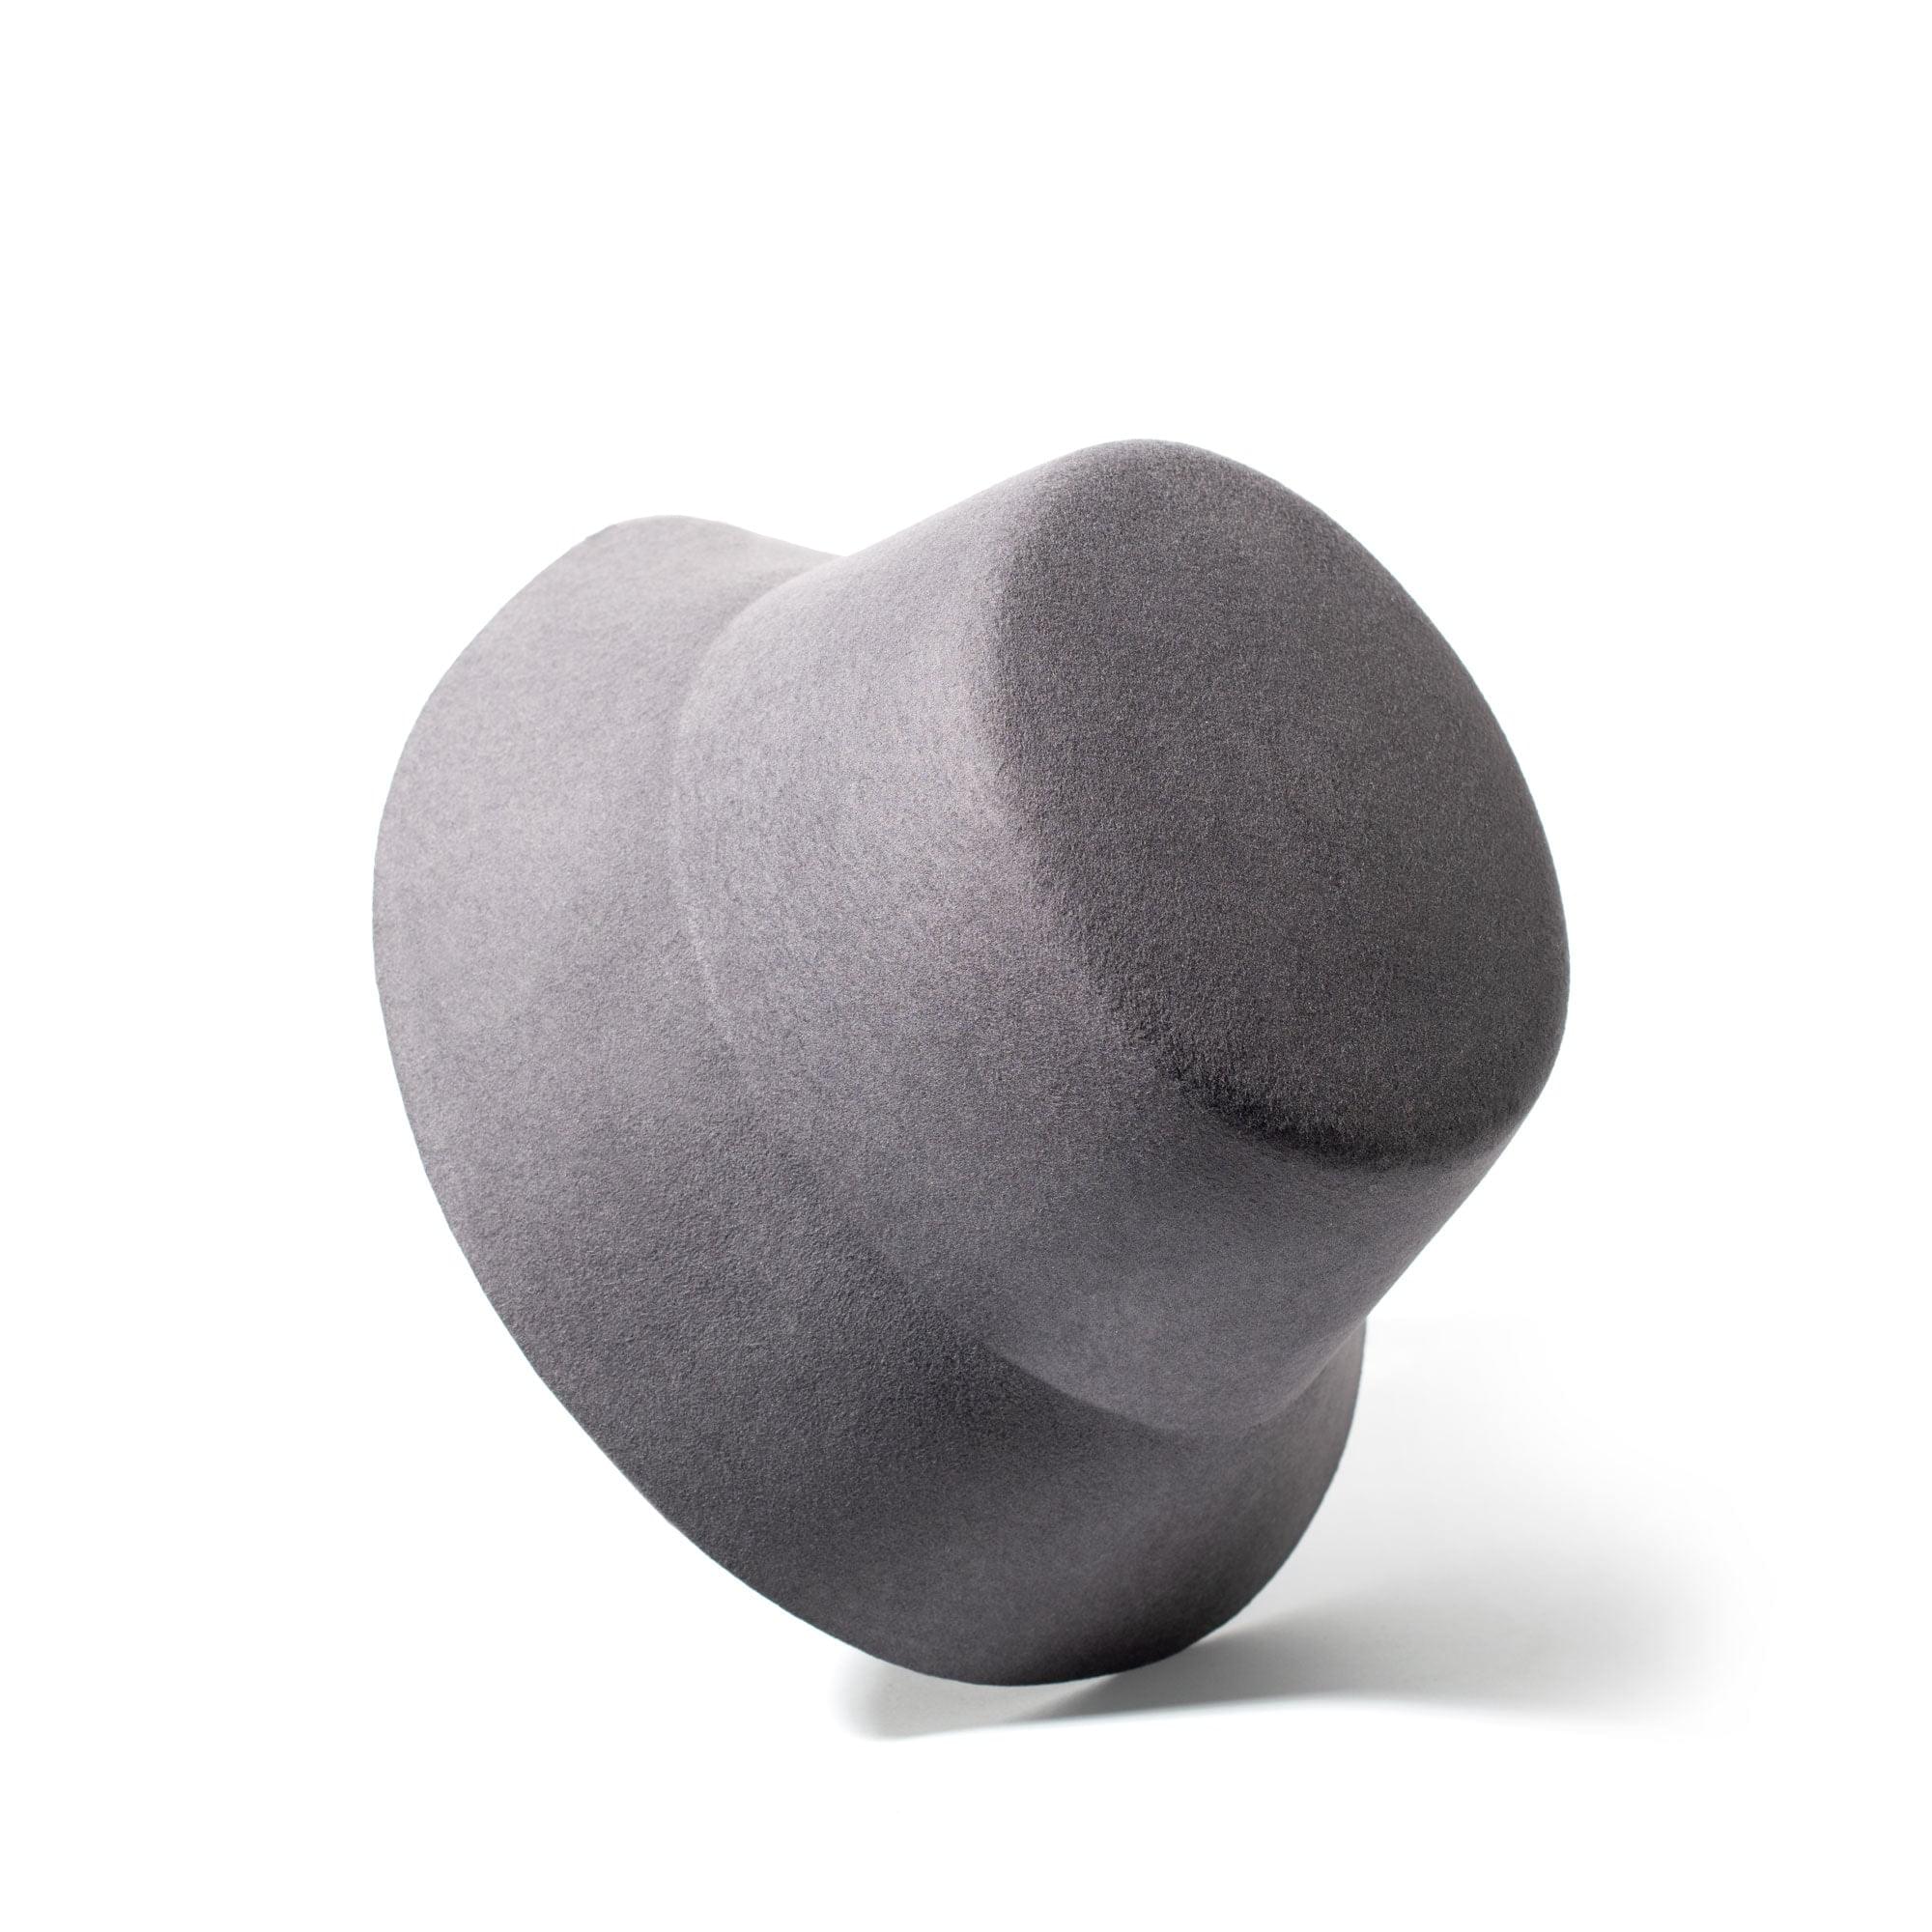 Wool Bucket Hat - Oxford